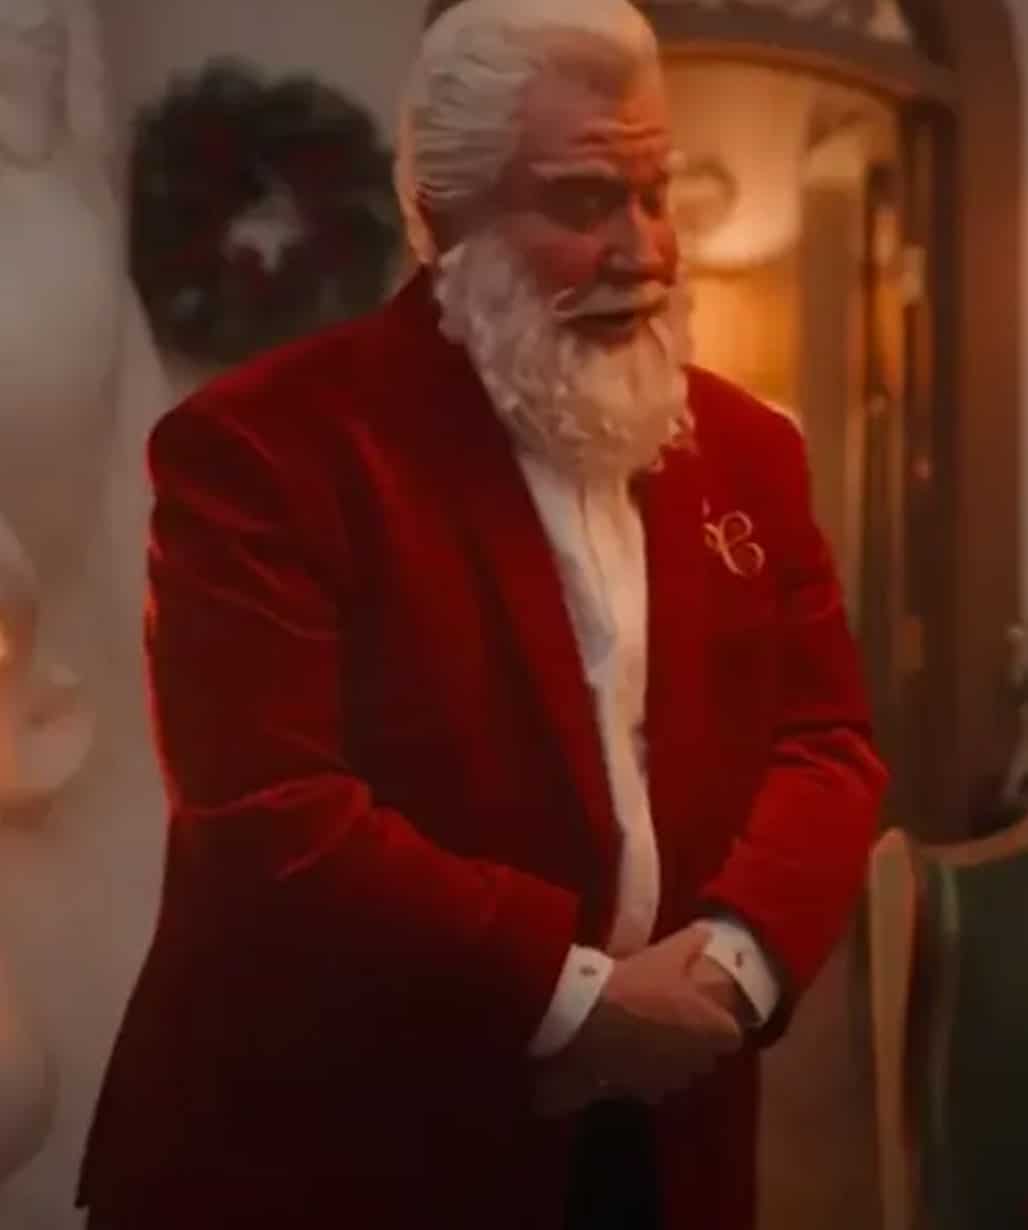 Tim-Allen-The-Santa-Clauses-Red-S02-Blazer